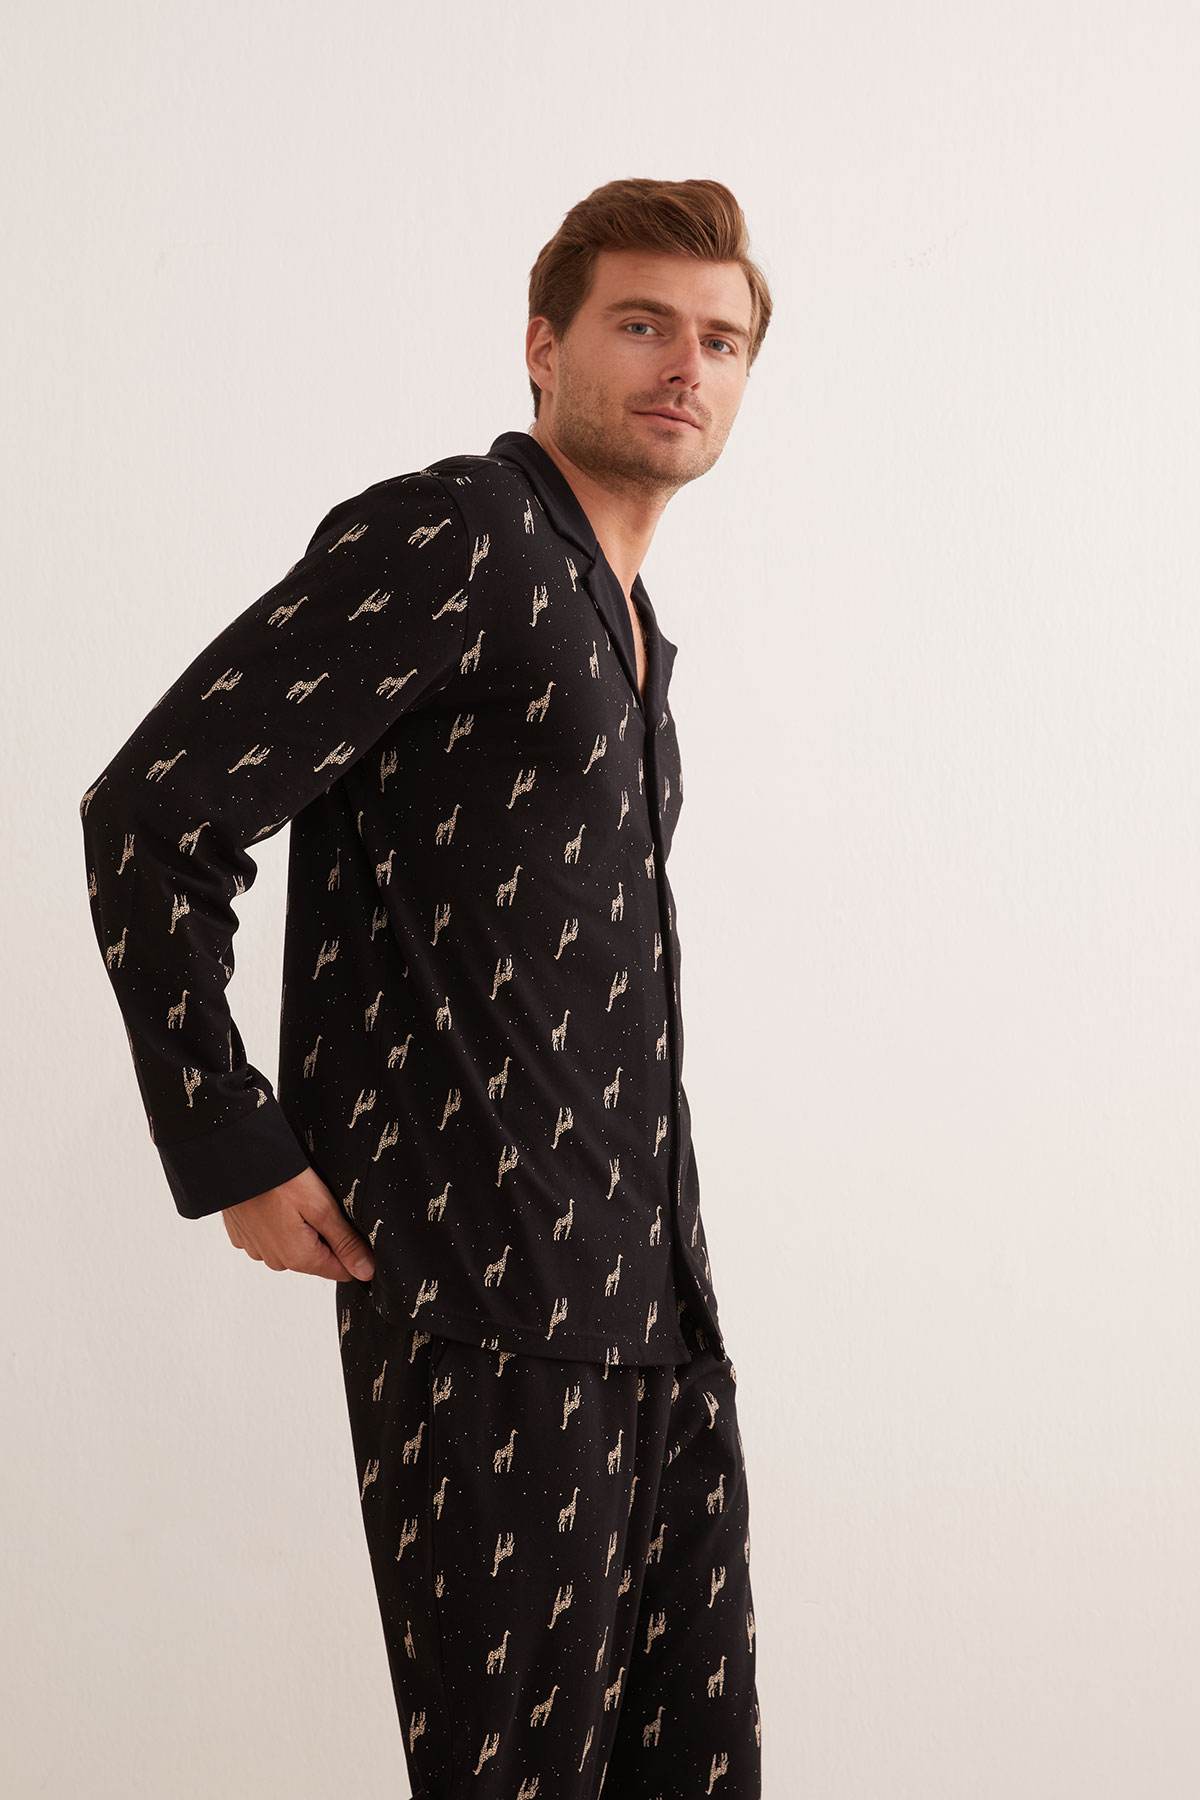 Erkek Pamuklu Belde Kontrast Biye Detaylı Pijama Altı